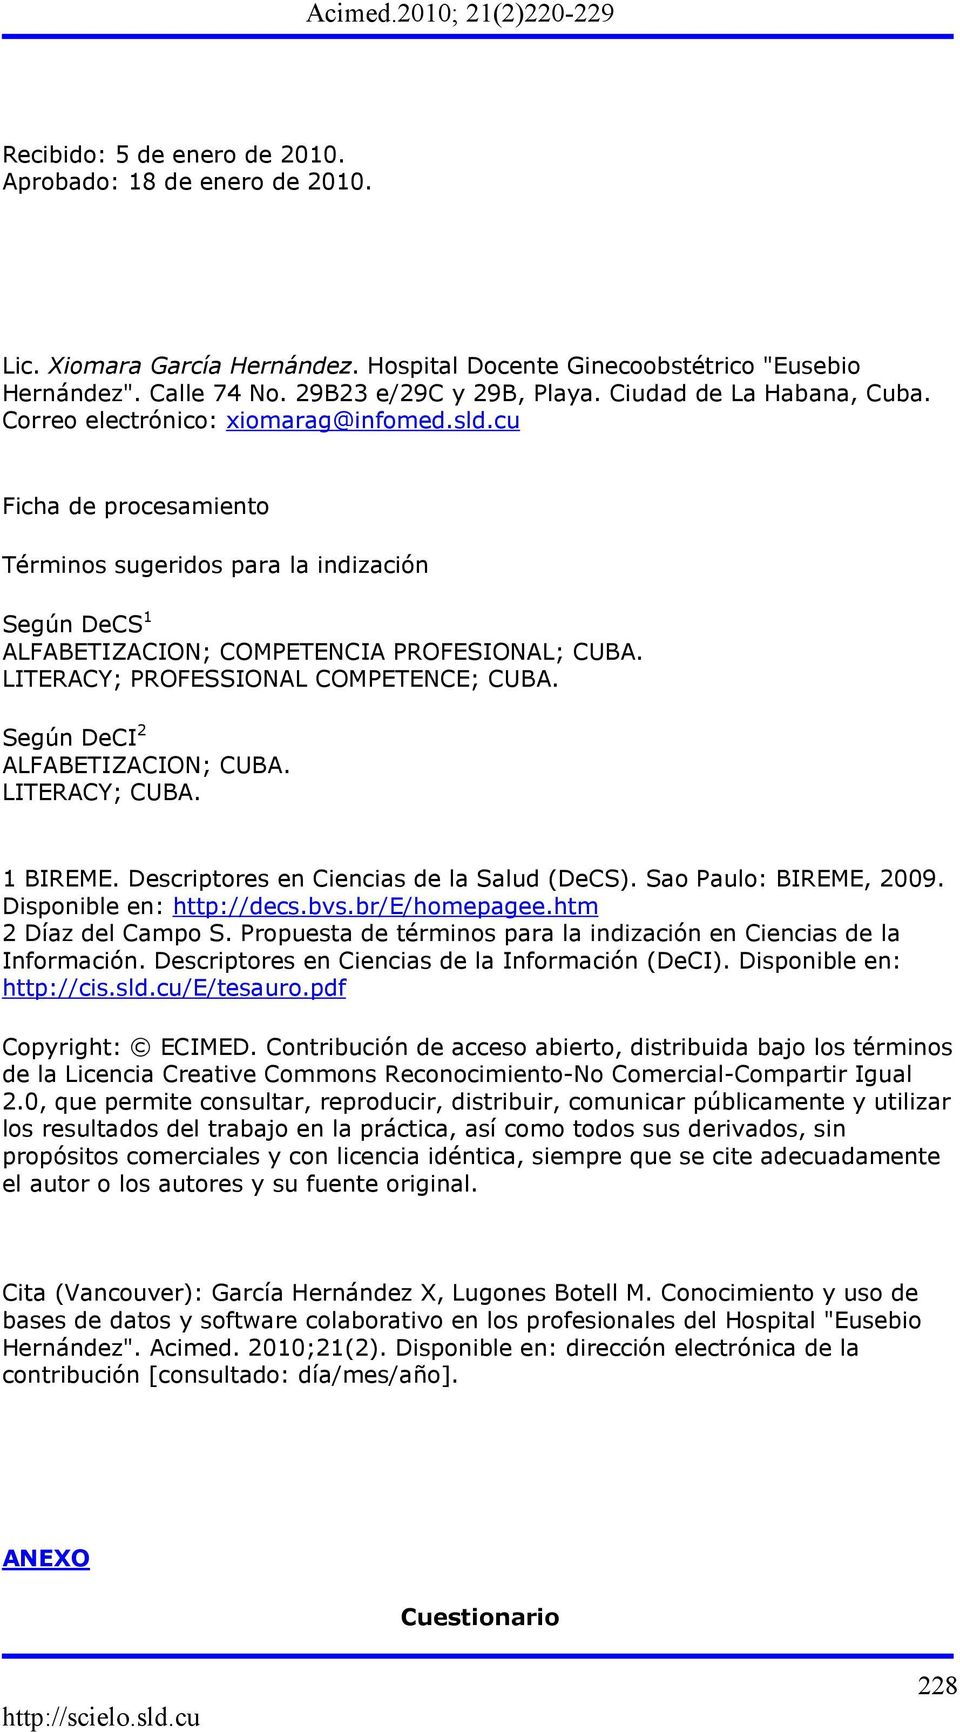 LITERACY; PROFESSIONAL COMPETENCE; CUBA. Según DeCI 2 ALFABETIZACION; CUBA. LITERACY; CUBA. 1 BIREME. Descriptores en Ciencias de la Salud (DeCS). Sao Paulo: BIREME, 2009. Disponible en: http://decs.